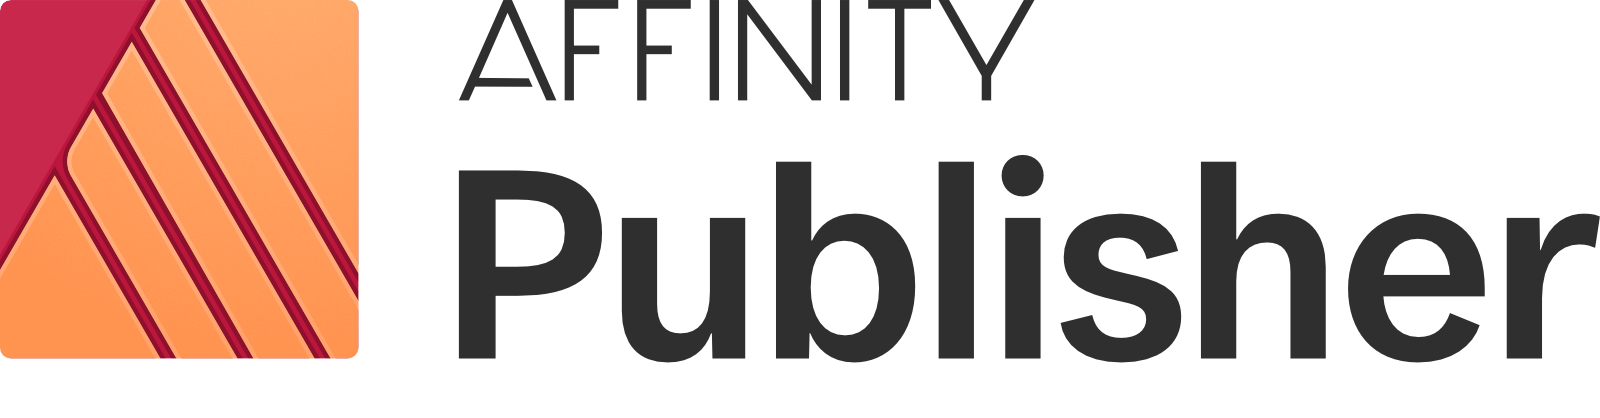 affinity publisher